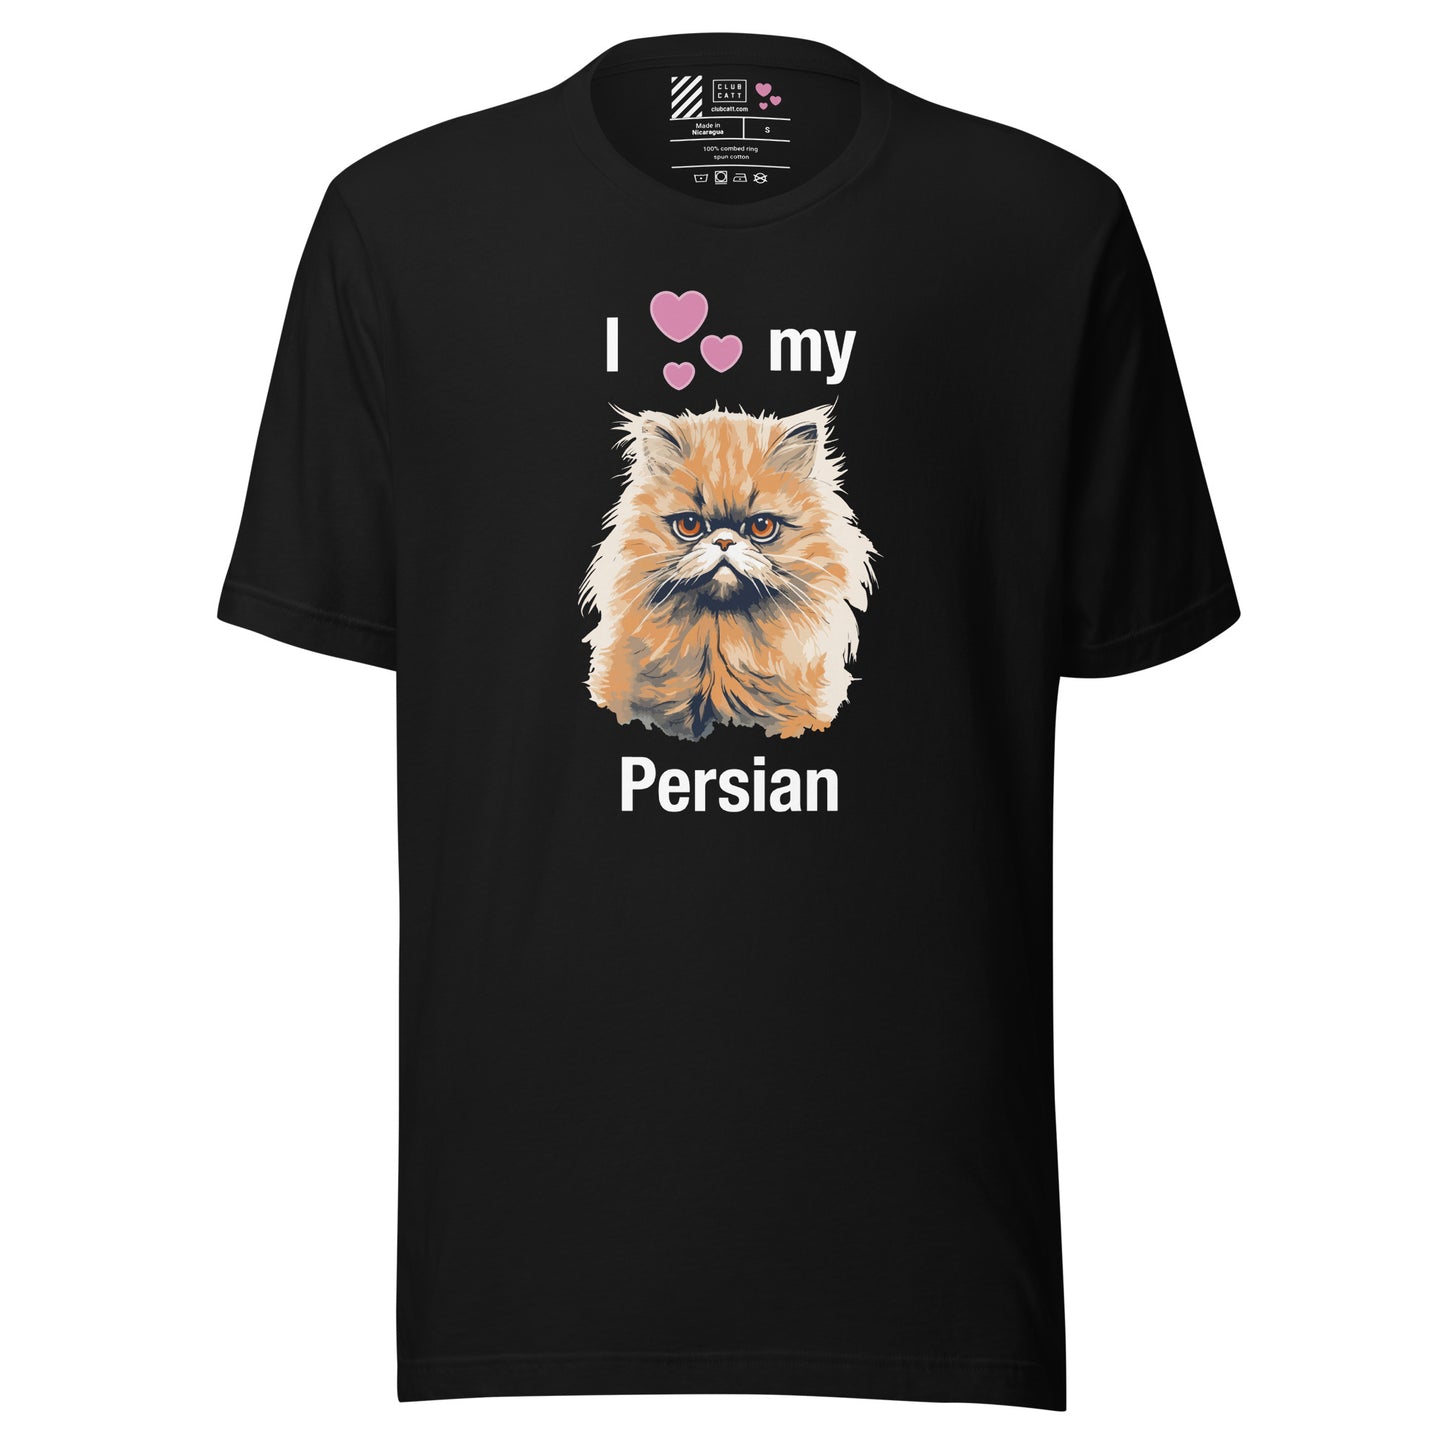 I Heart My Persian Cat T-Shirt